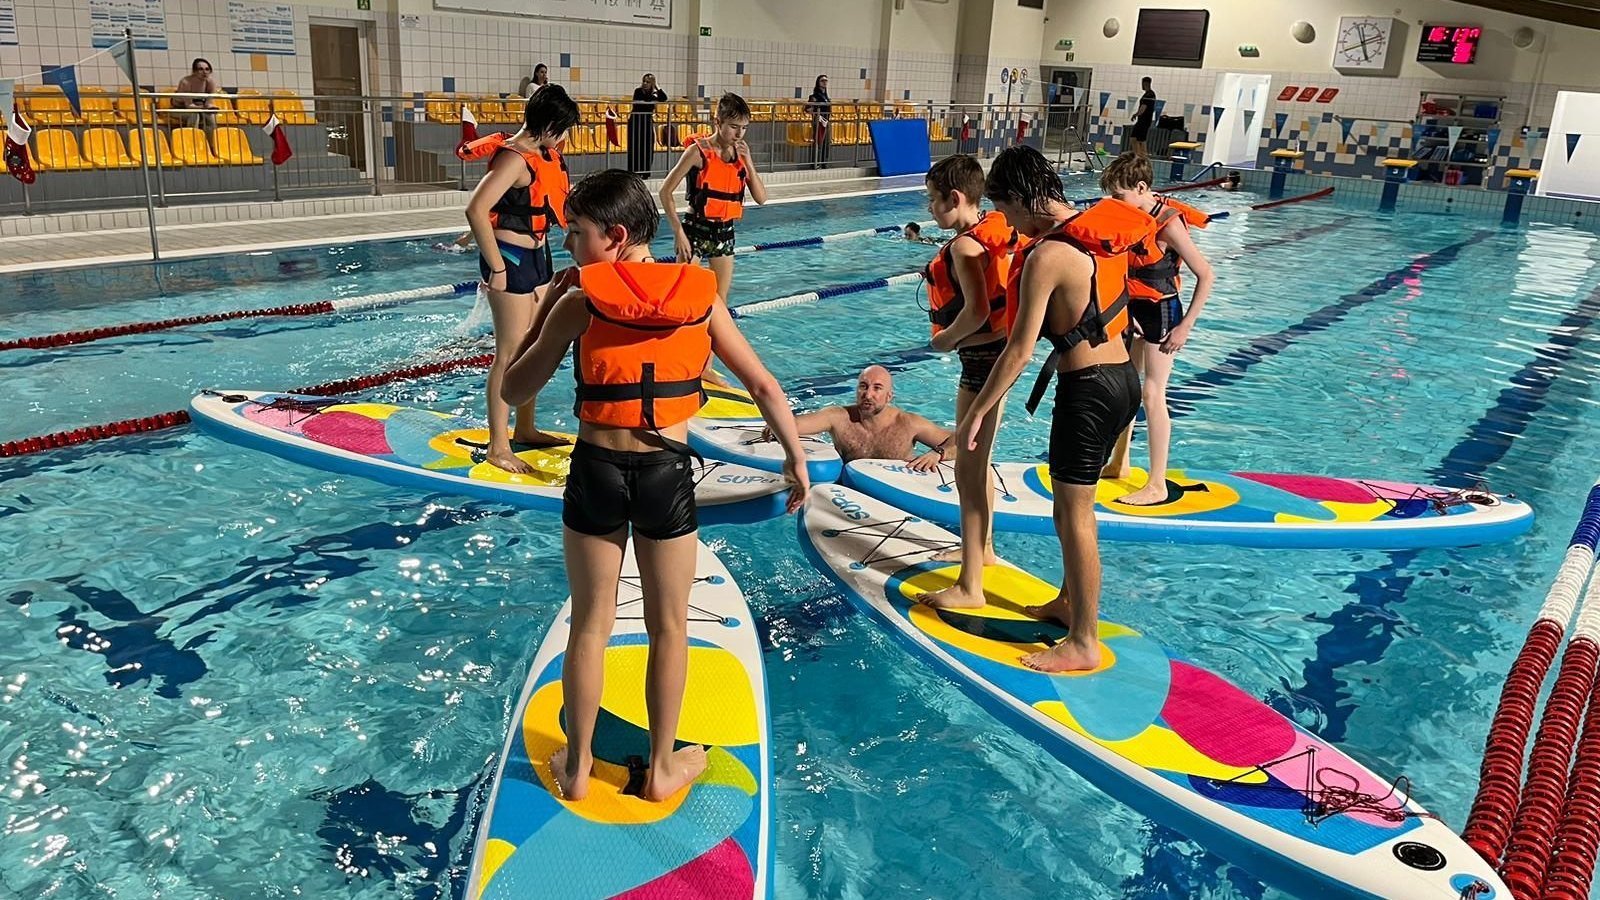 Na zdjeciu grupa dzieci ćwiczących pływanie na deskach